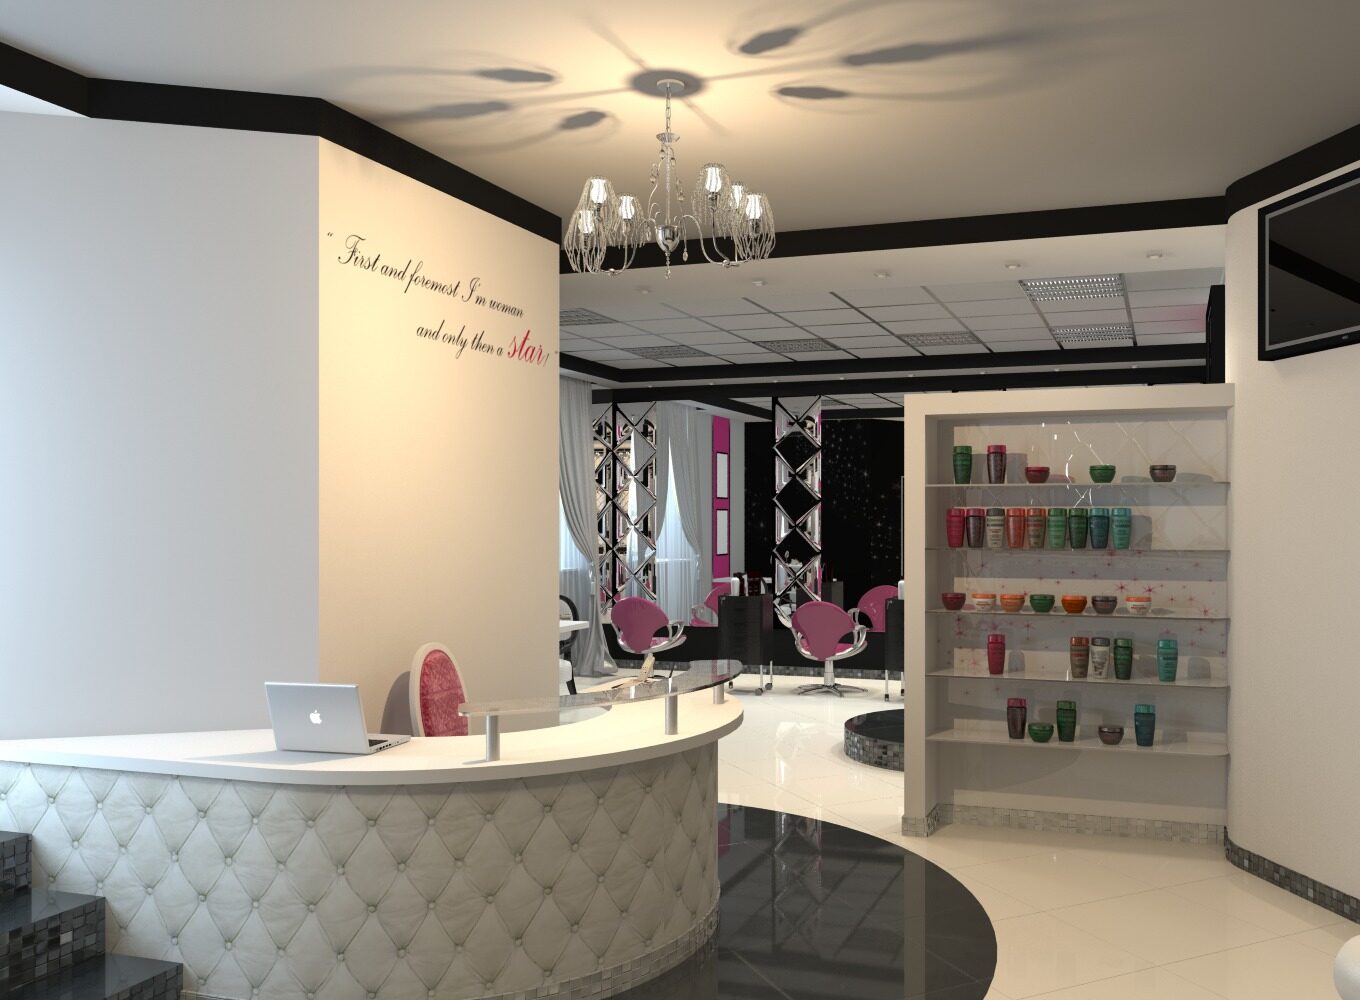 MOI salon: beauty-платформа для салонов, мастеров и клиентов